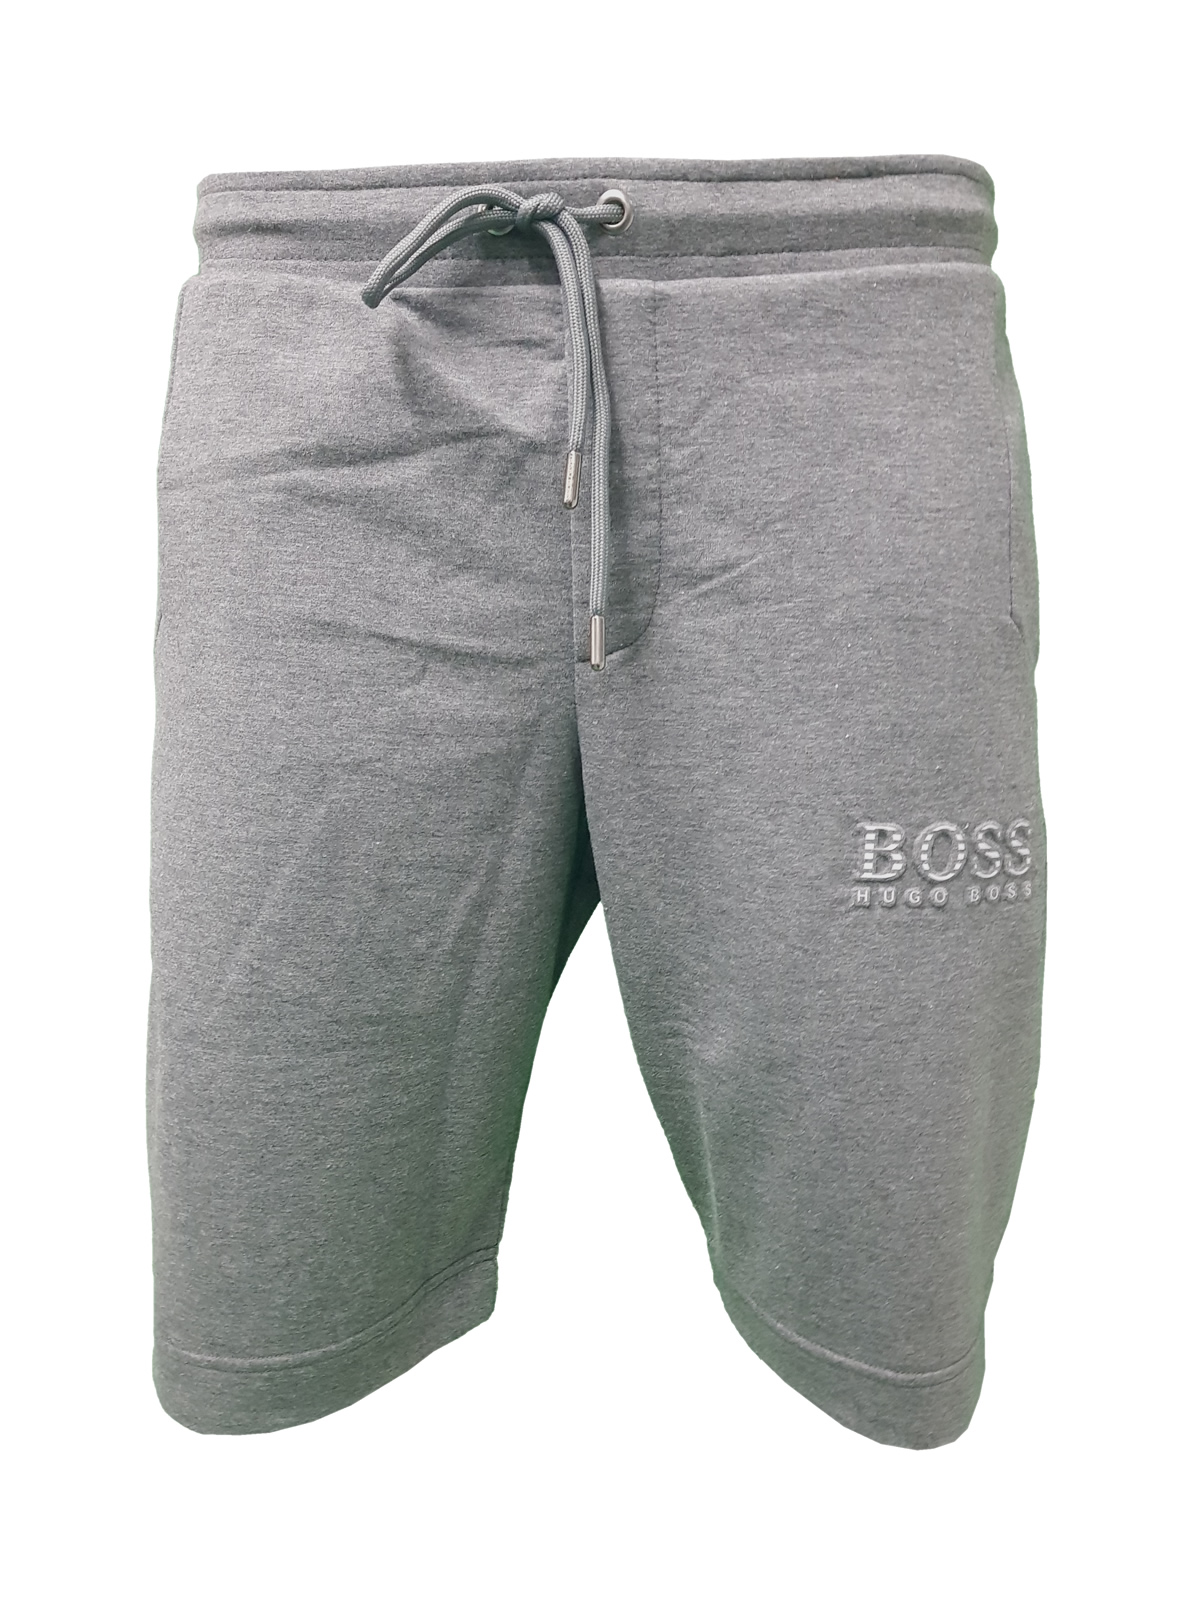 hugo boss grey shorts